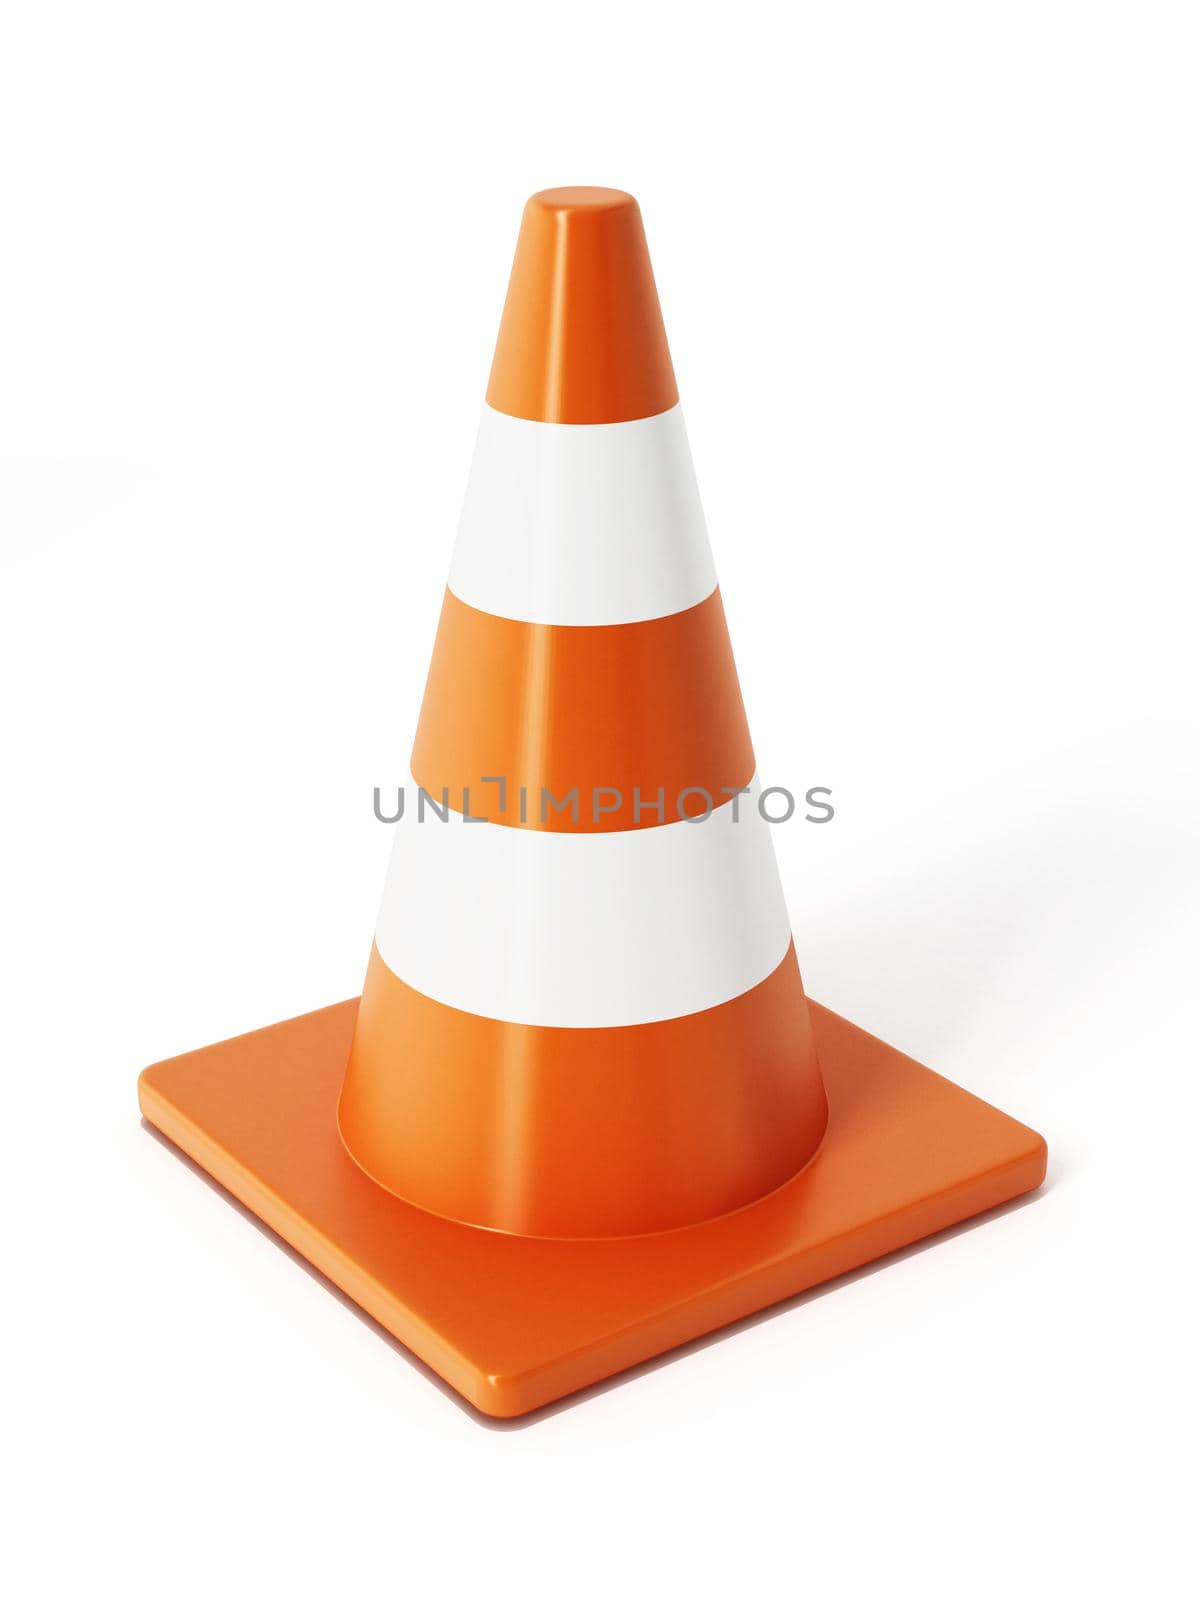 Traffic cones by Simsek